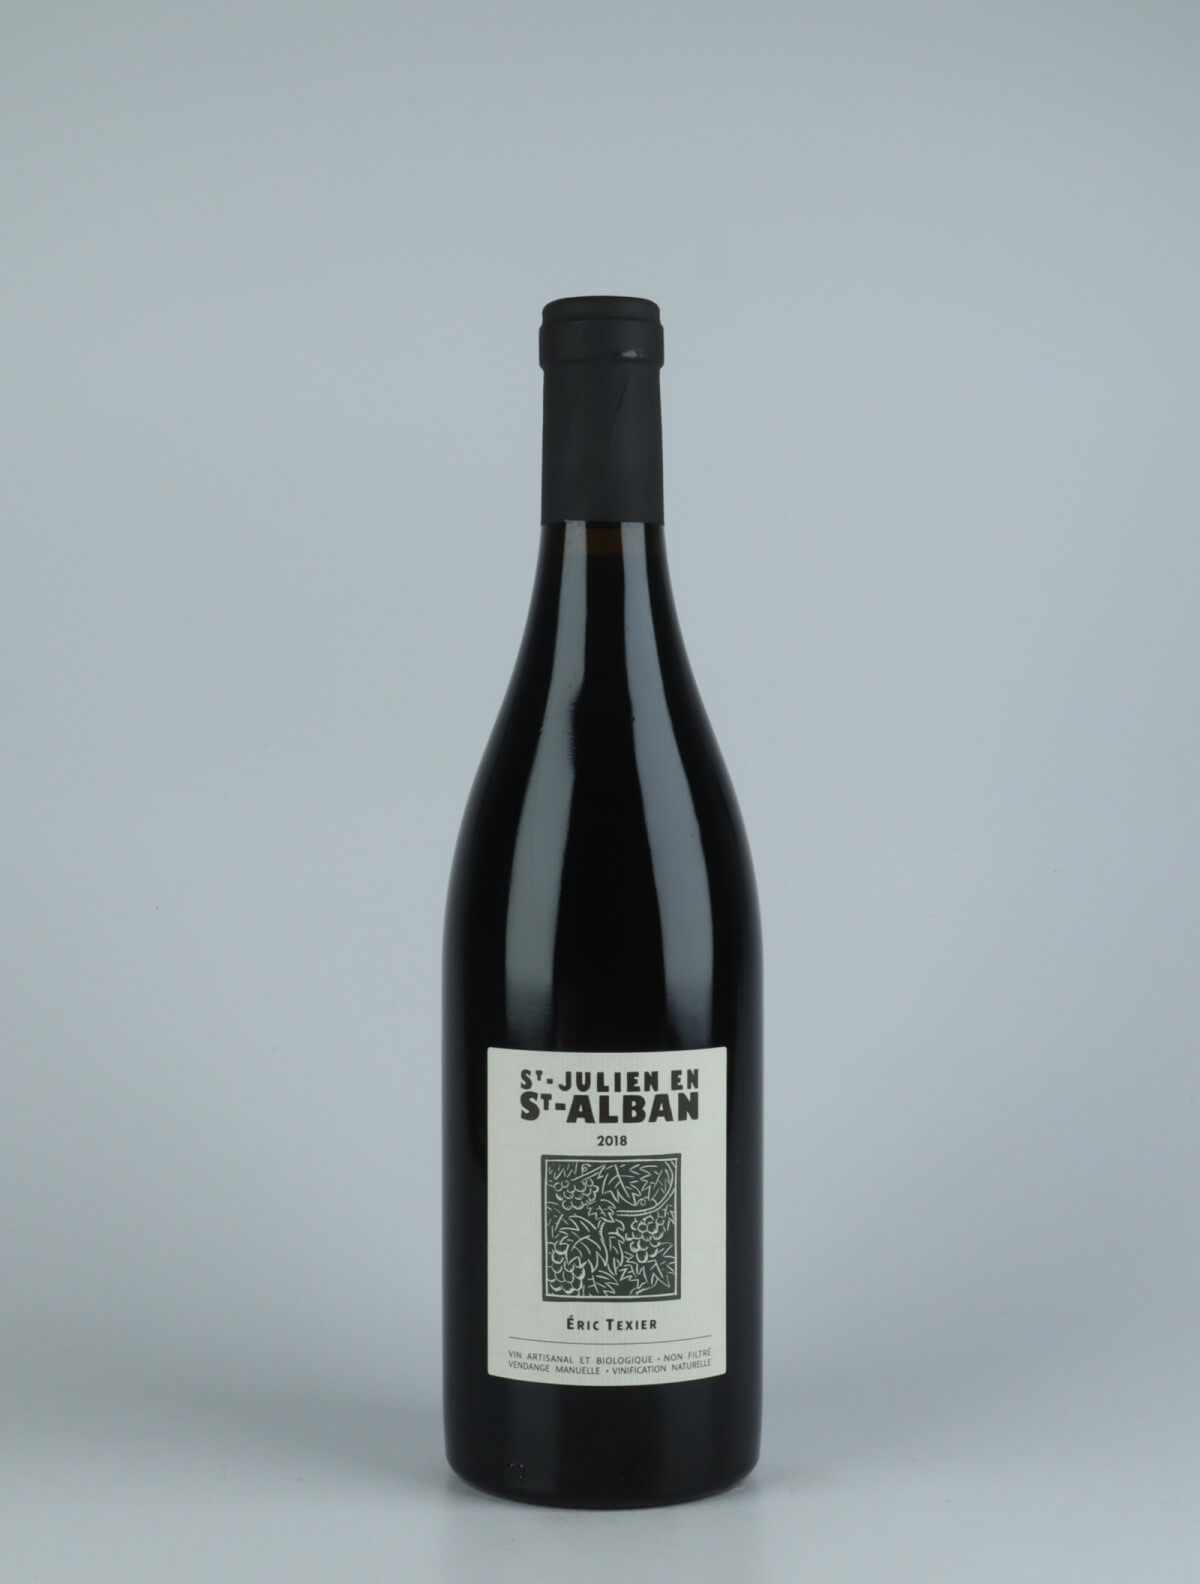 En flaske 2018 St Julien en St Alban Rødvin fra Eric Texier, Rhône i Frankrig